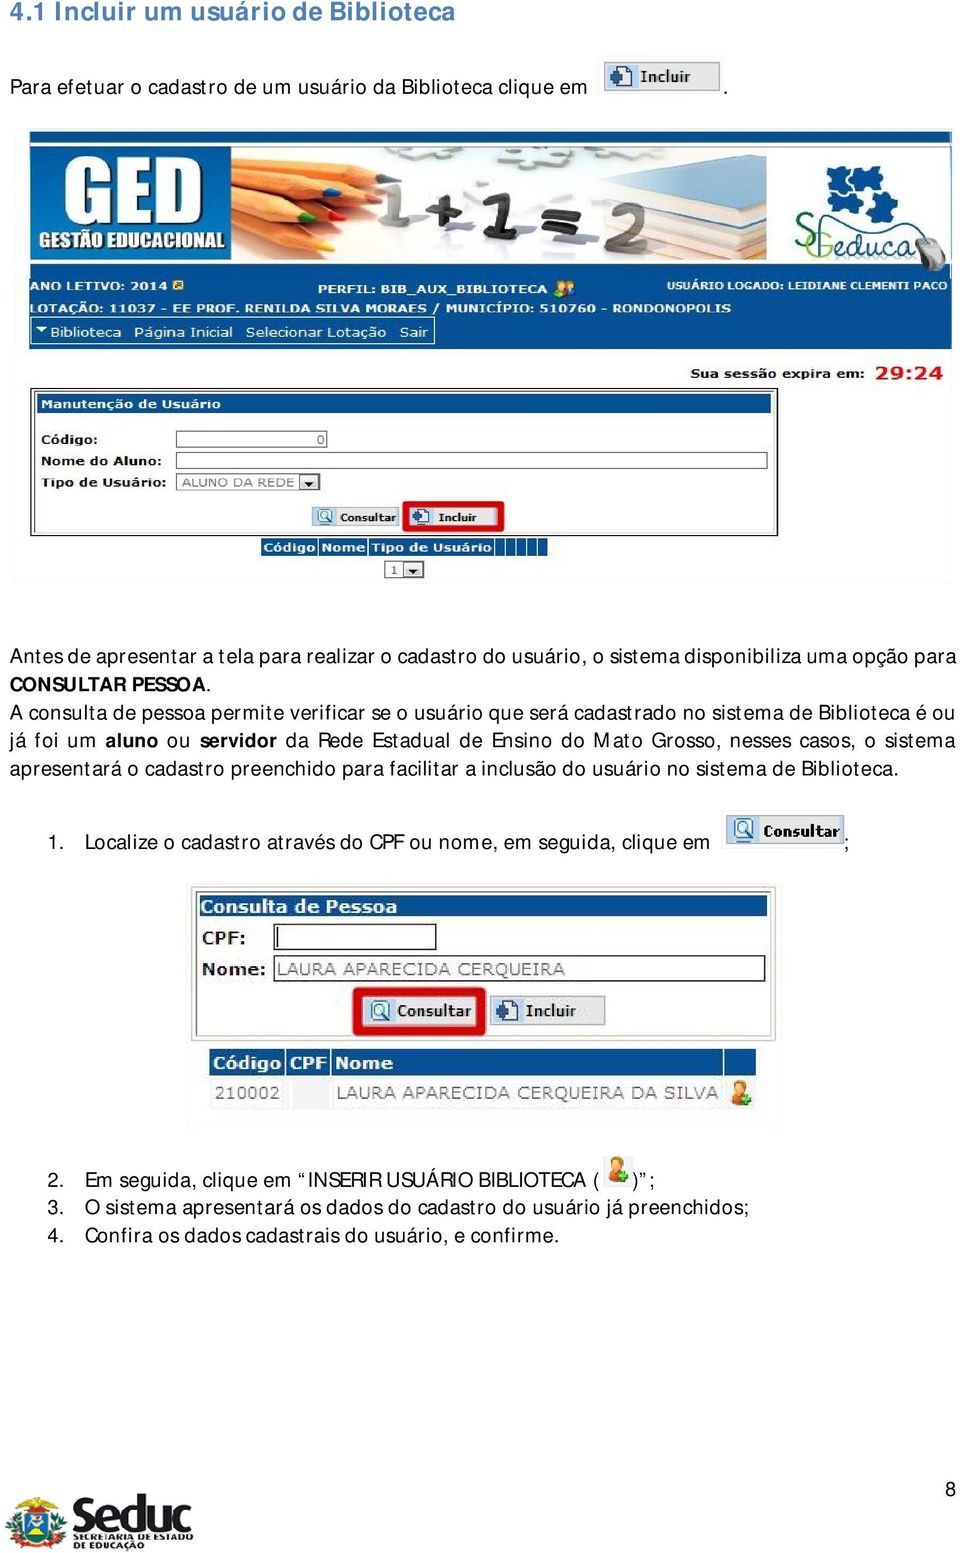 A consulta de pessoa permite verificar se o usuário que será cadastrado no sistema de Biblioteca é ou já foi um aluno ou servidor da Rede Estadual de Ensino do Mato Grosso, nesses casos, o